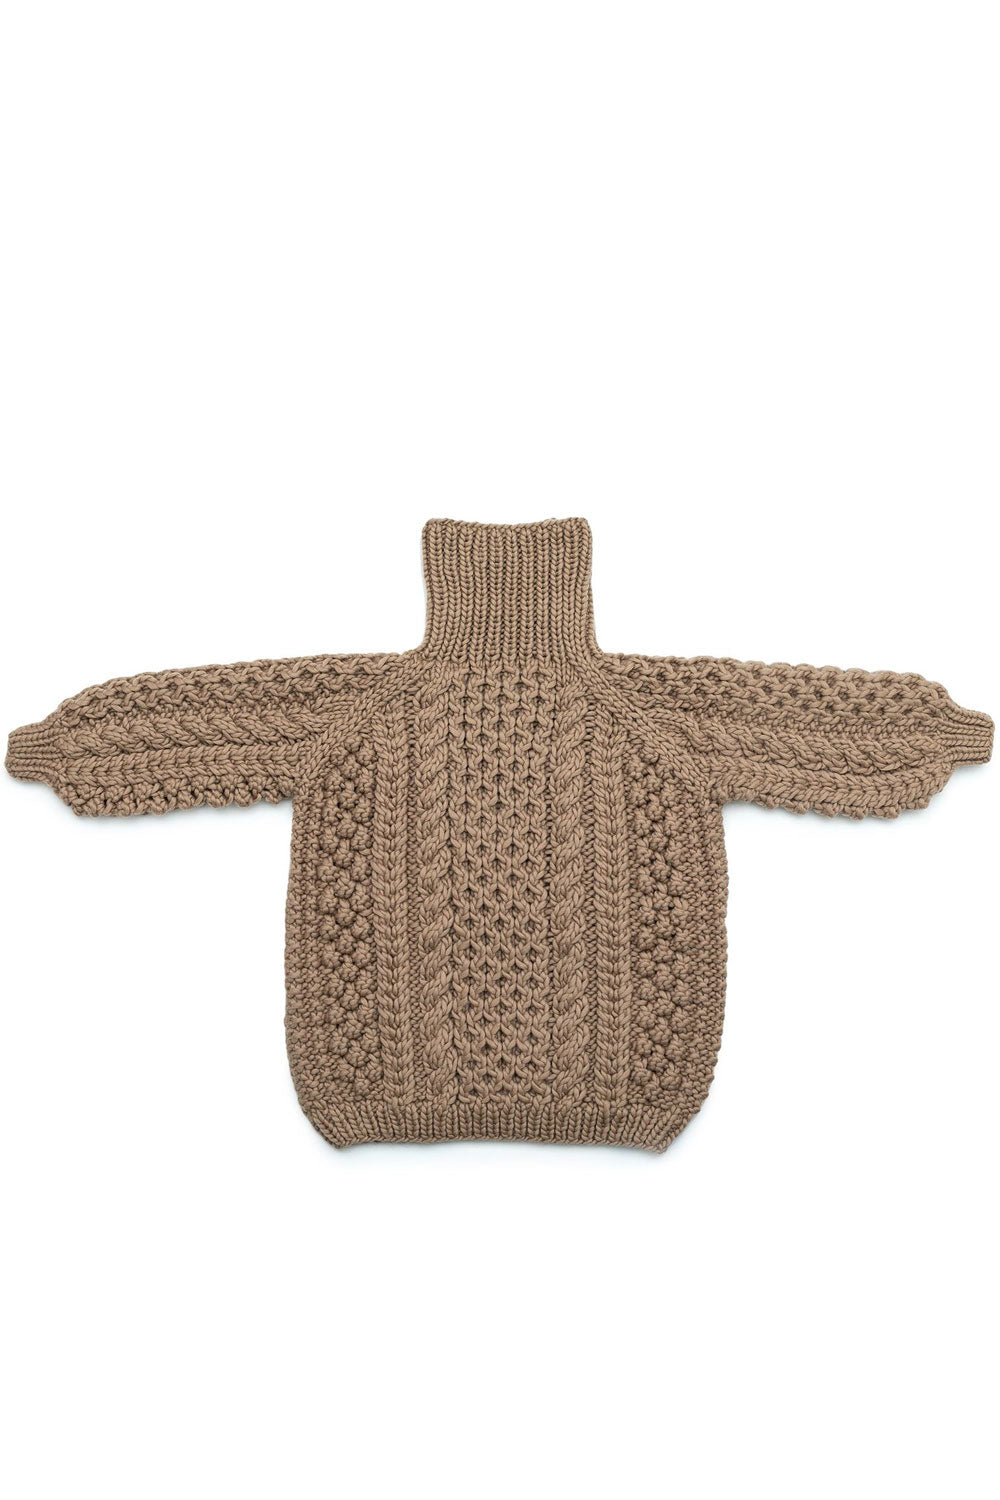 High Neck Aran (hand knitted)